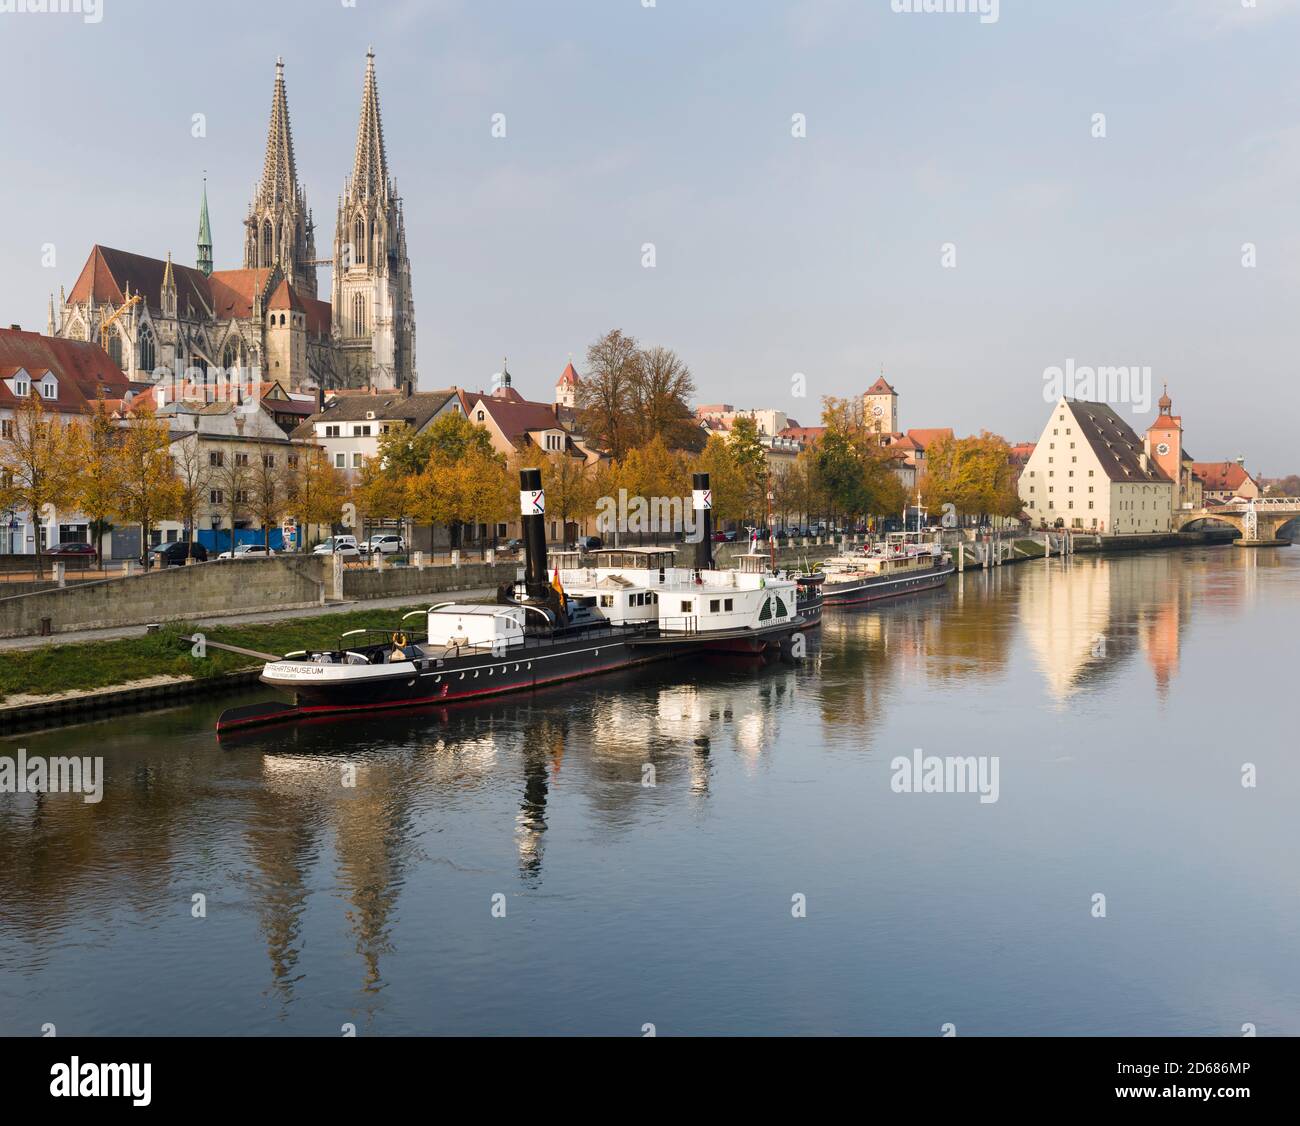 Regensburg en Baviera, el casco antiguo está catalogado como Patrimonio de la Humanidad de la UNESCO. El Museo del Transporte Marítimo del Danubio, el casco antiguo en el fondo. Europa, Central E Foto de stock